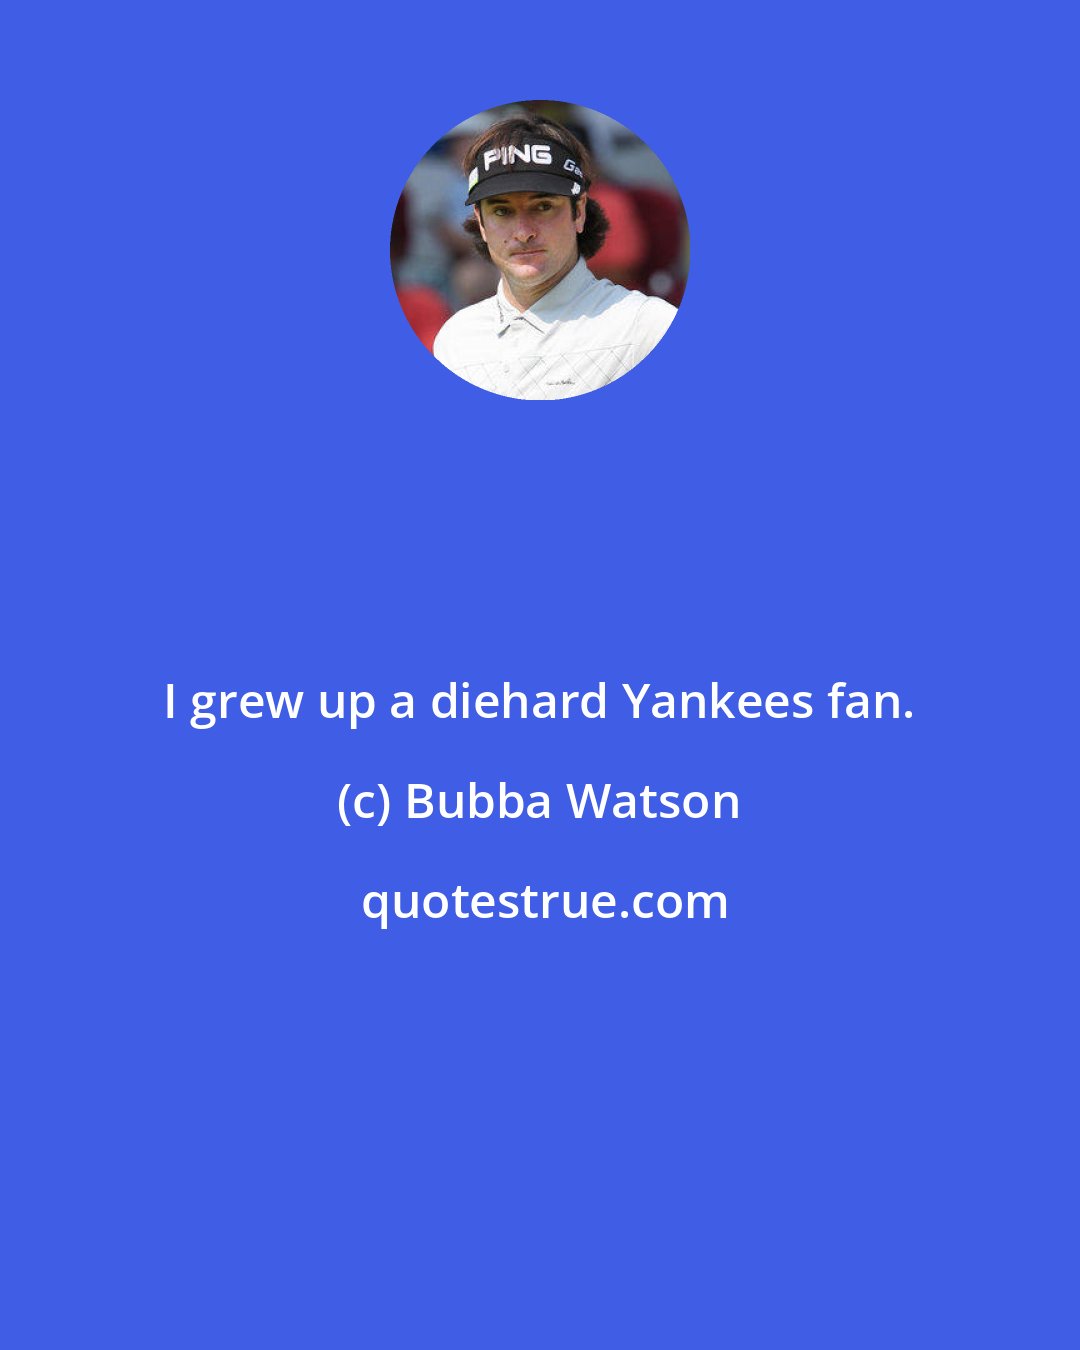 Bubba Watson: I grew up a diehard Yankees fan.